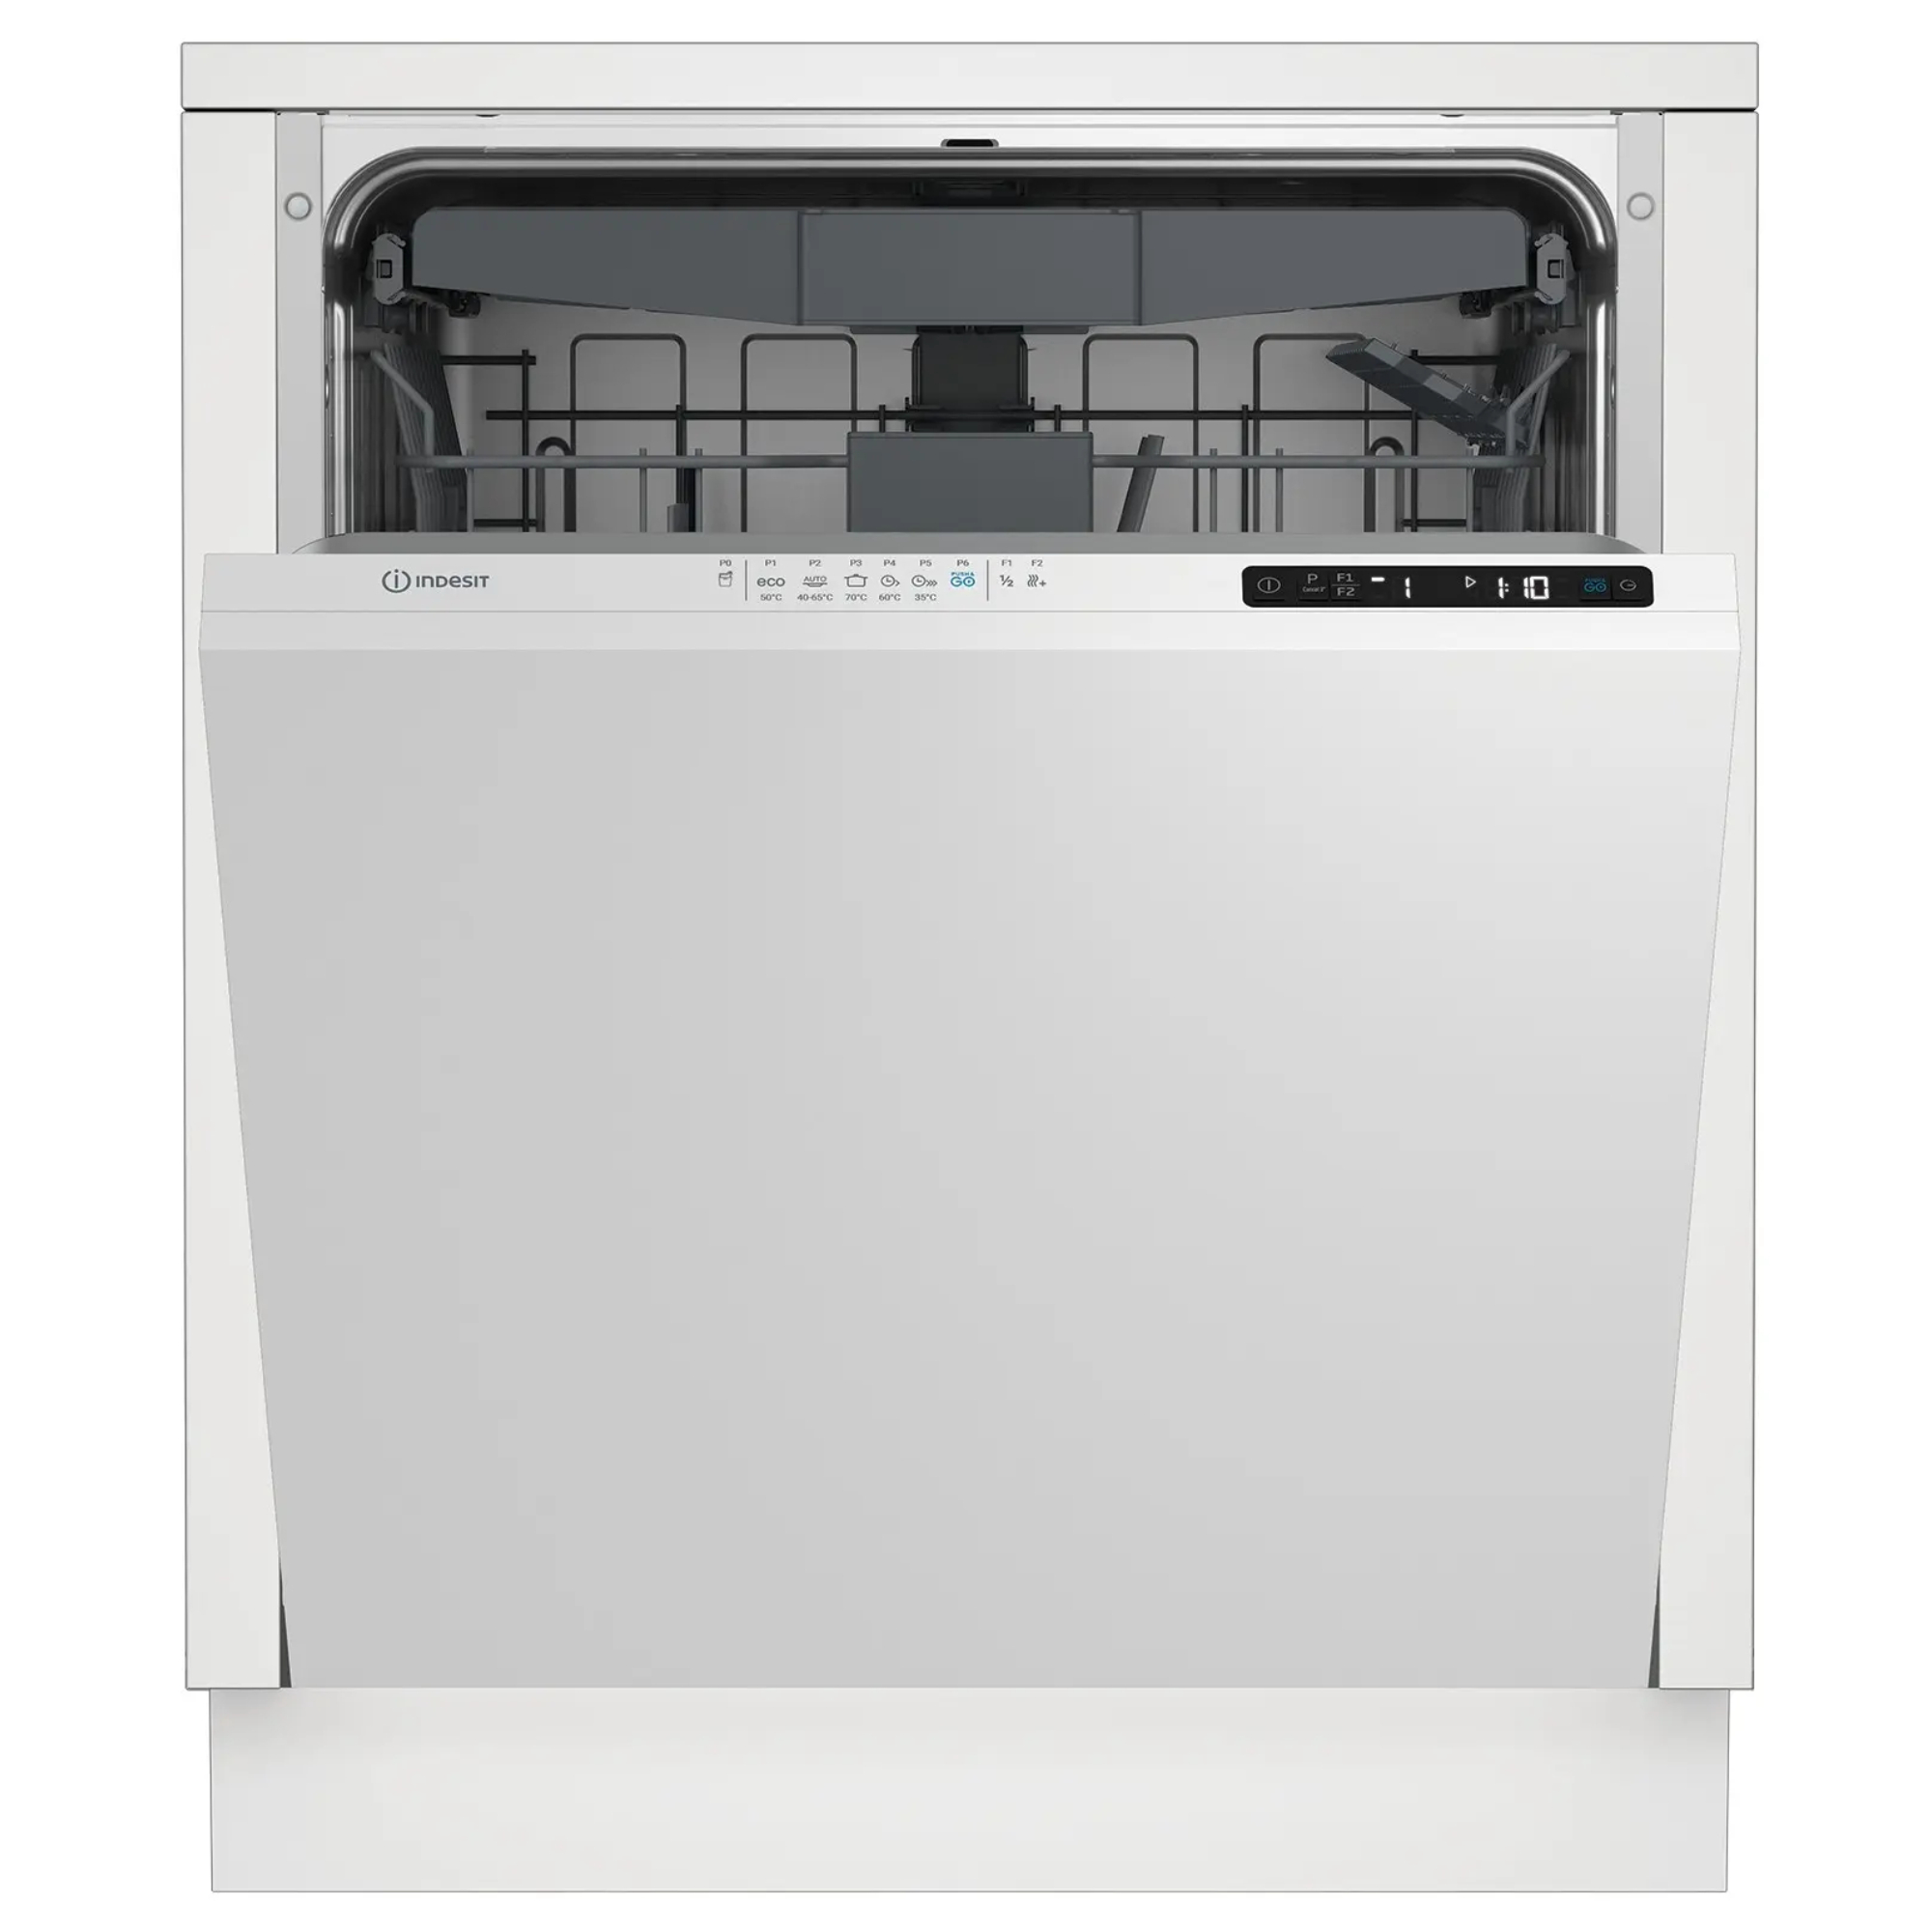 Встраиваемая посудомоечная машина Indesit DI 5C65 AED посудомоечная машина indesit dfs 1a59 s